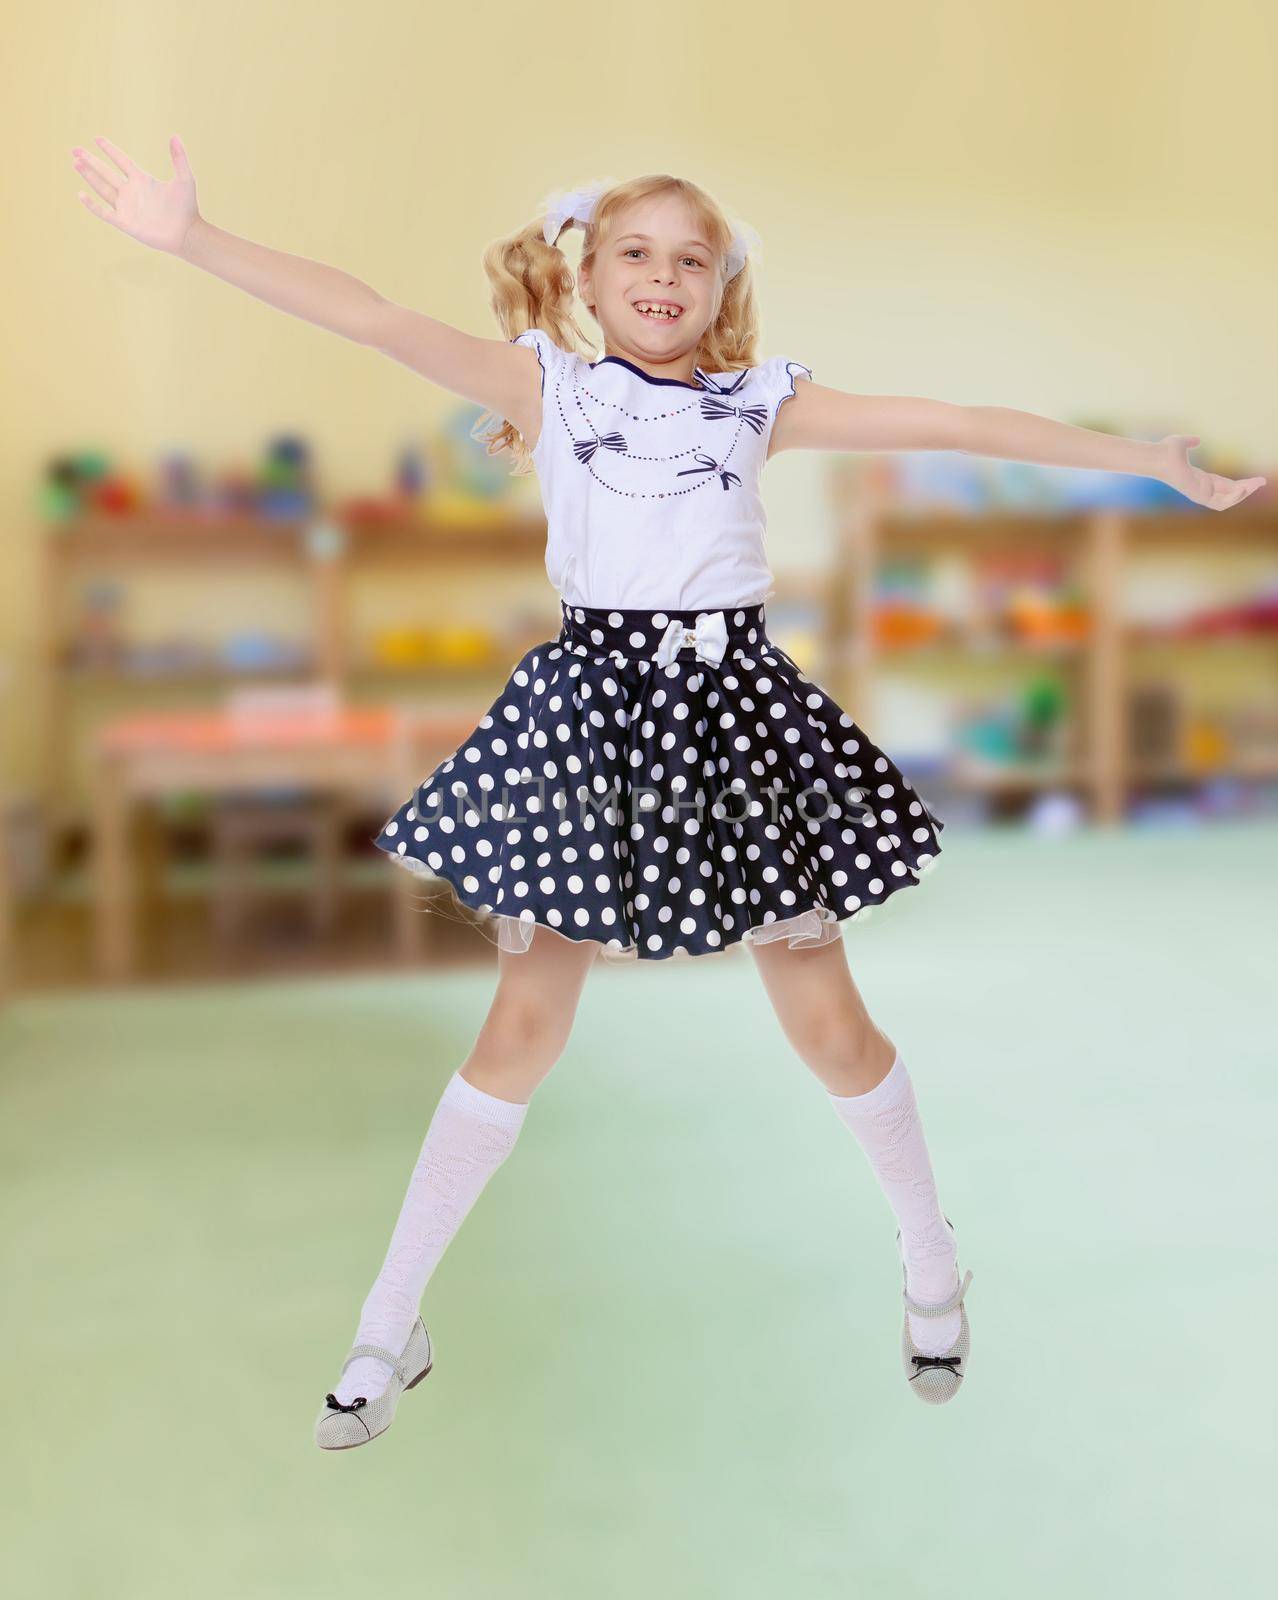 Little girl jumping by kolesnikov_studio